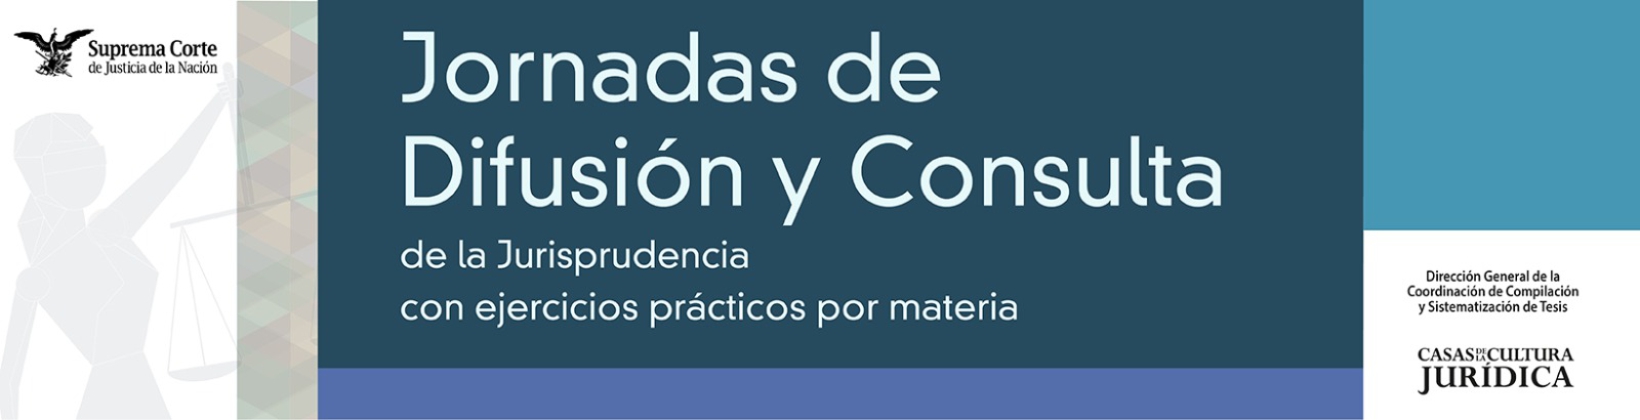 Banner de Jornadas de Difusión y Consulta de la Jurisprudencia con ejercicios prácticos por materia - Constitucional y Ambiental